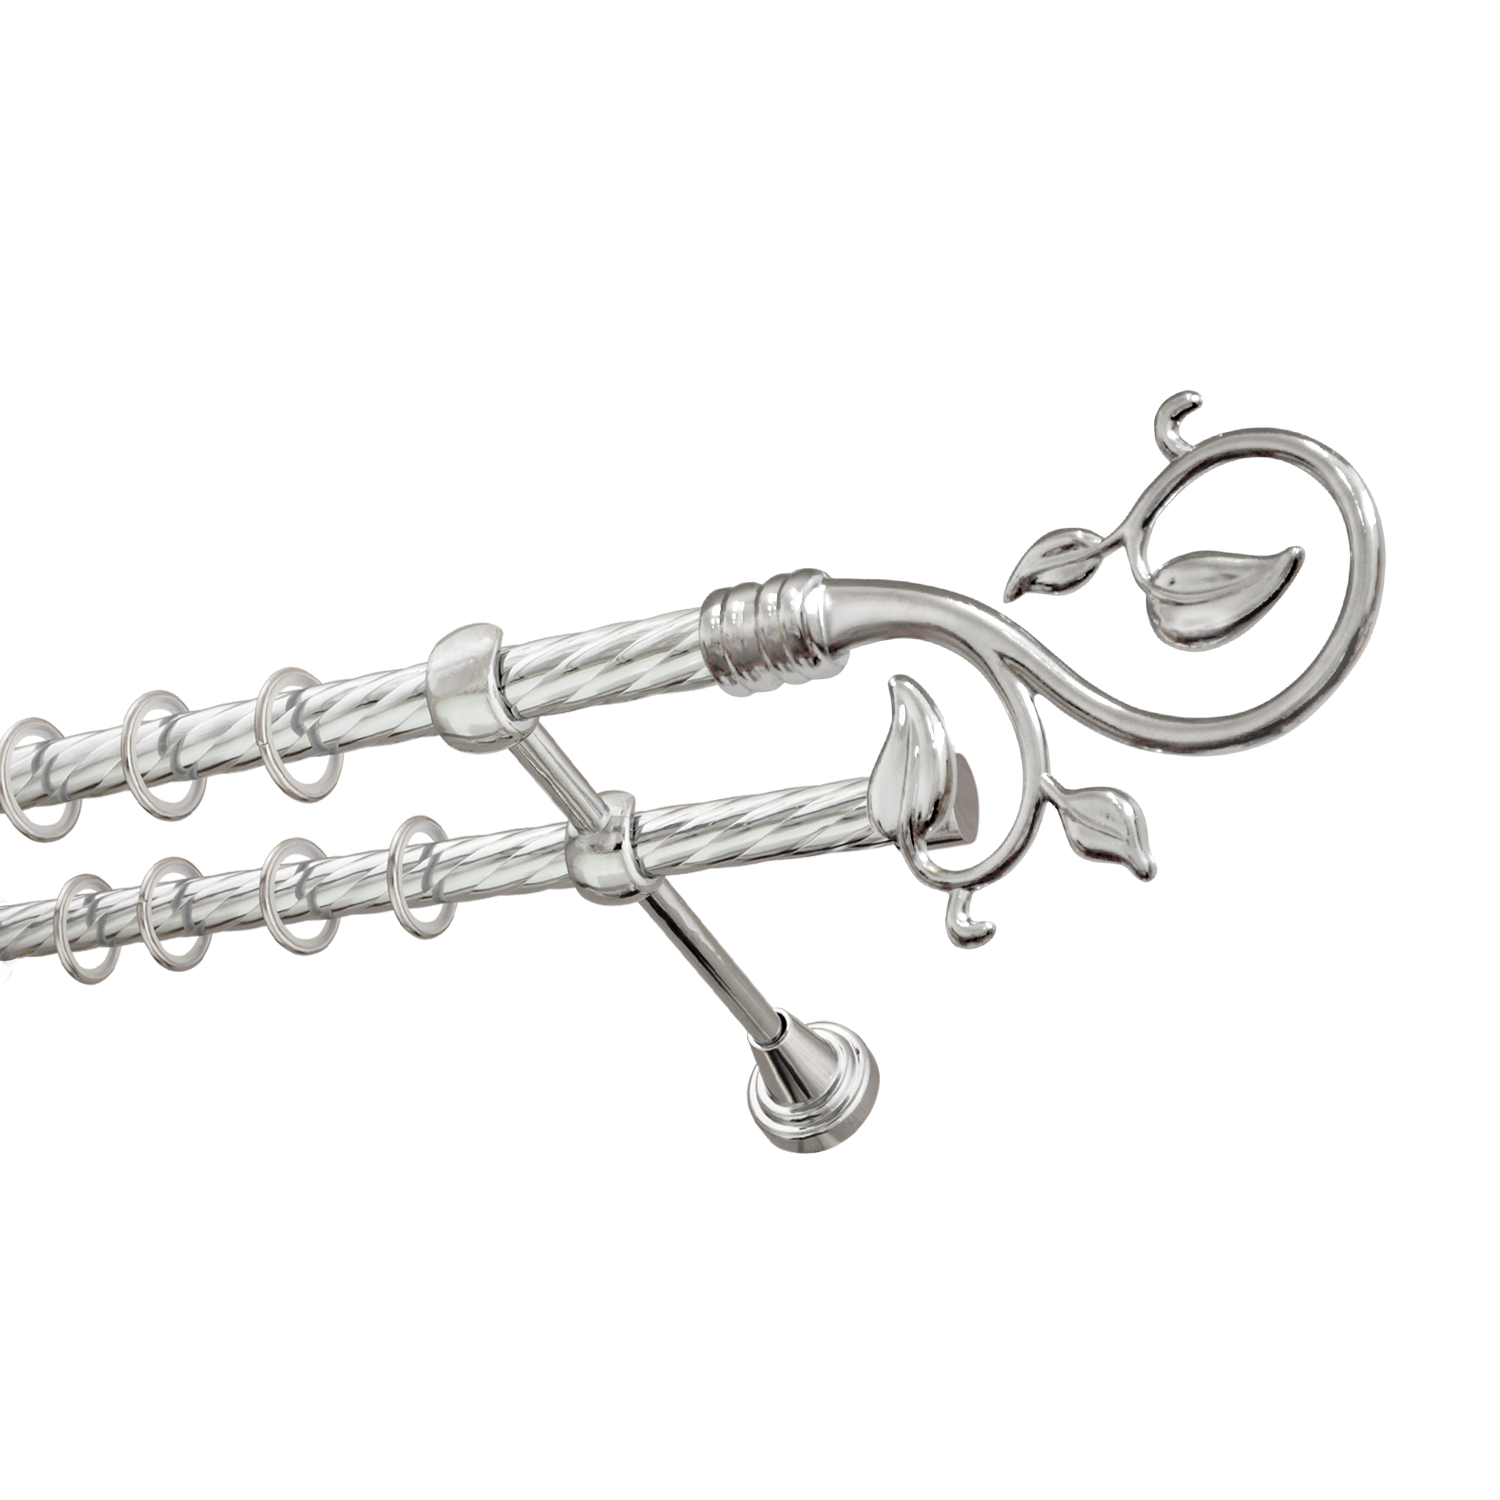 Металлический карниз для штор Амели, двухрядный 16/16 мм, серебро, витая штанга, длина 240 см - фото Wikidecor.ru